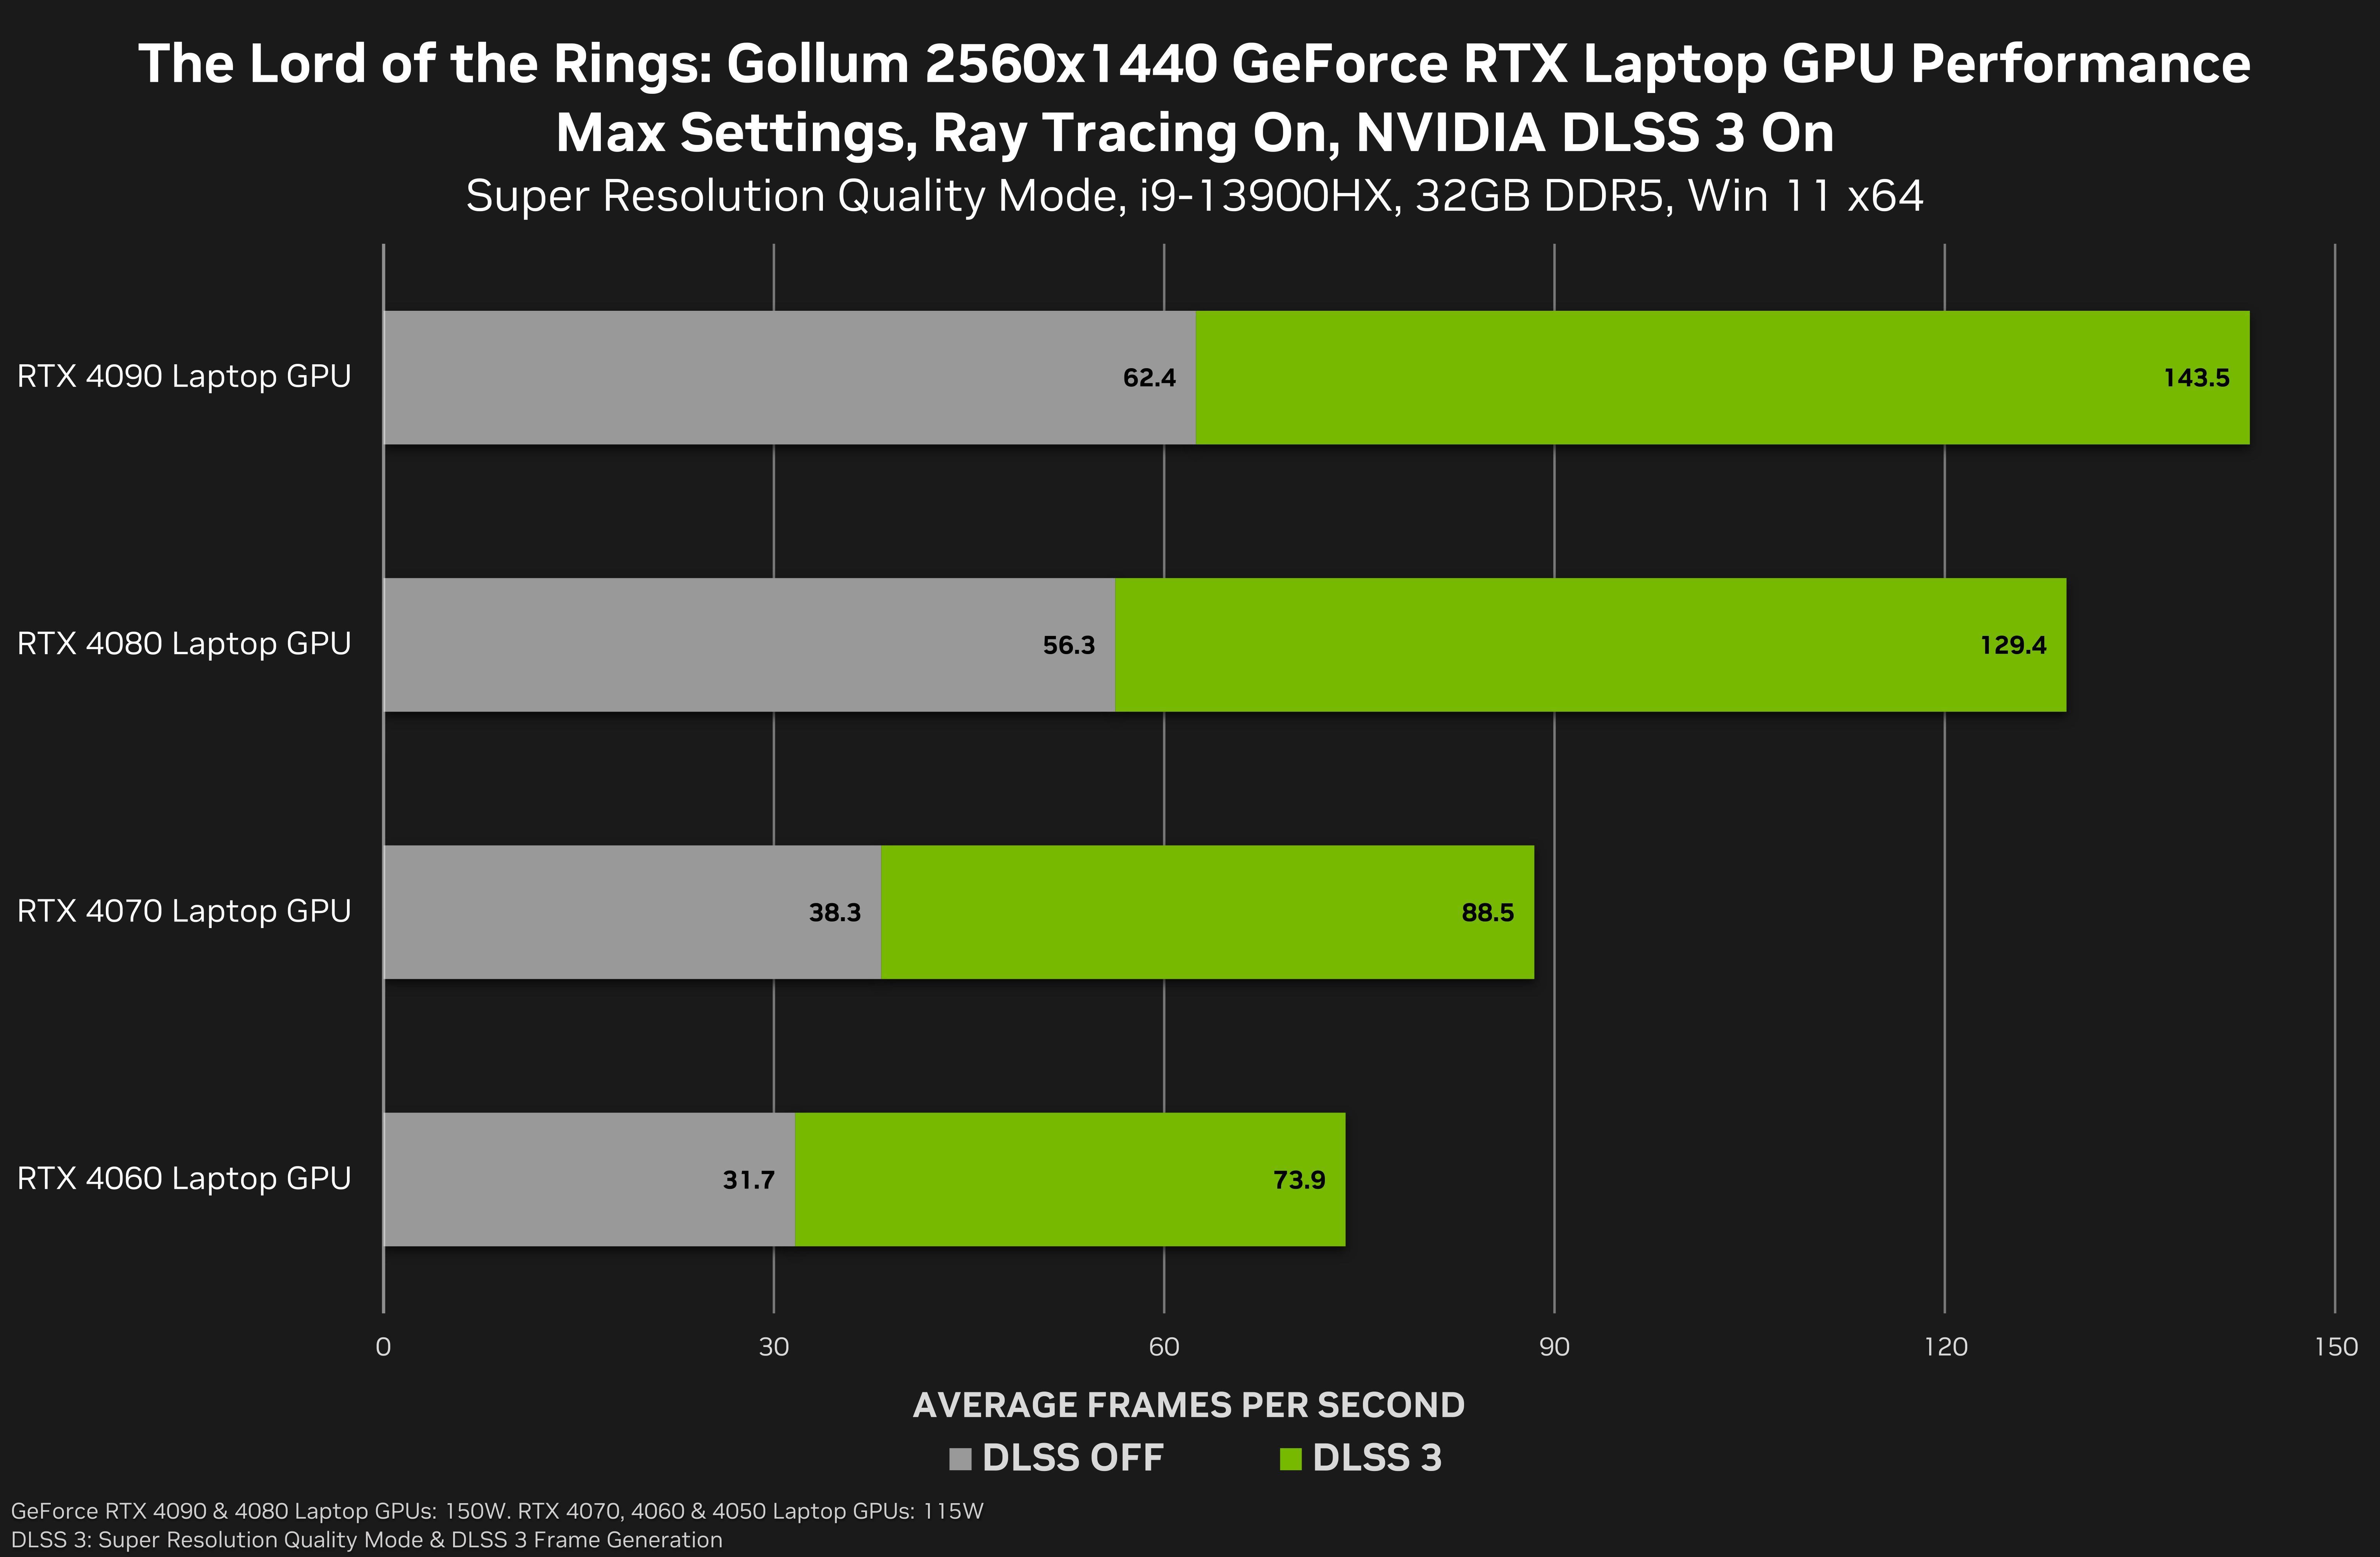 Best Elden Ring PC settings for FPS, performance, stability - Dexerto